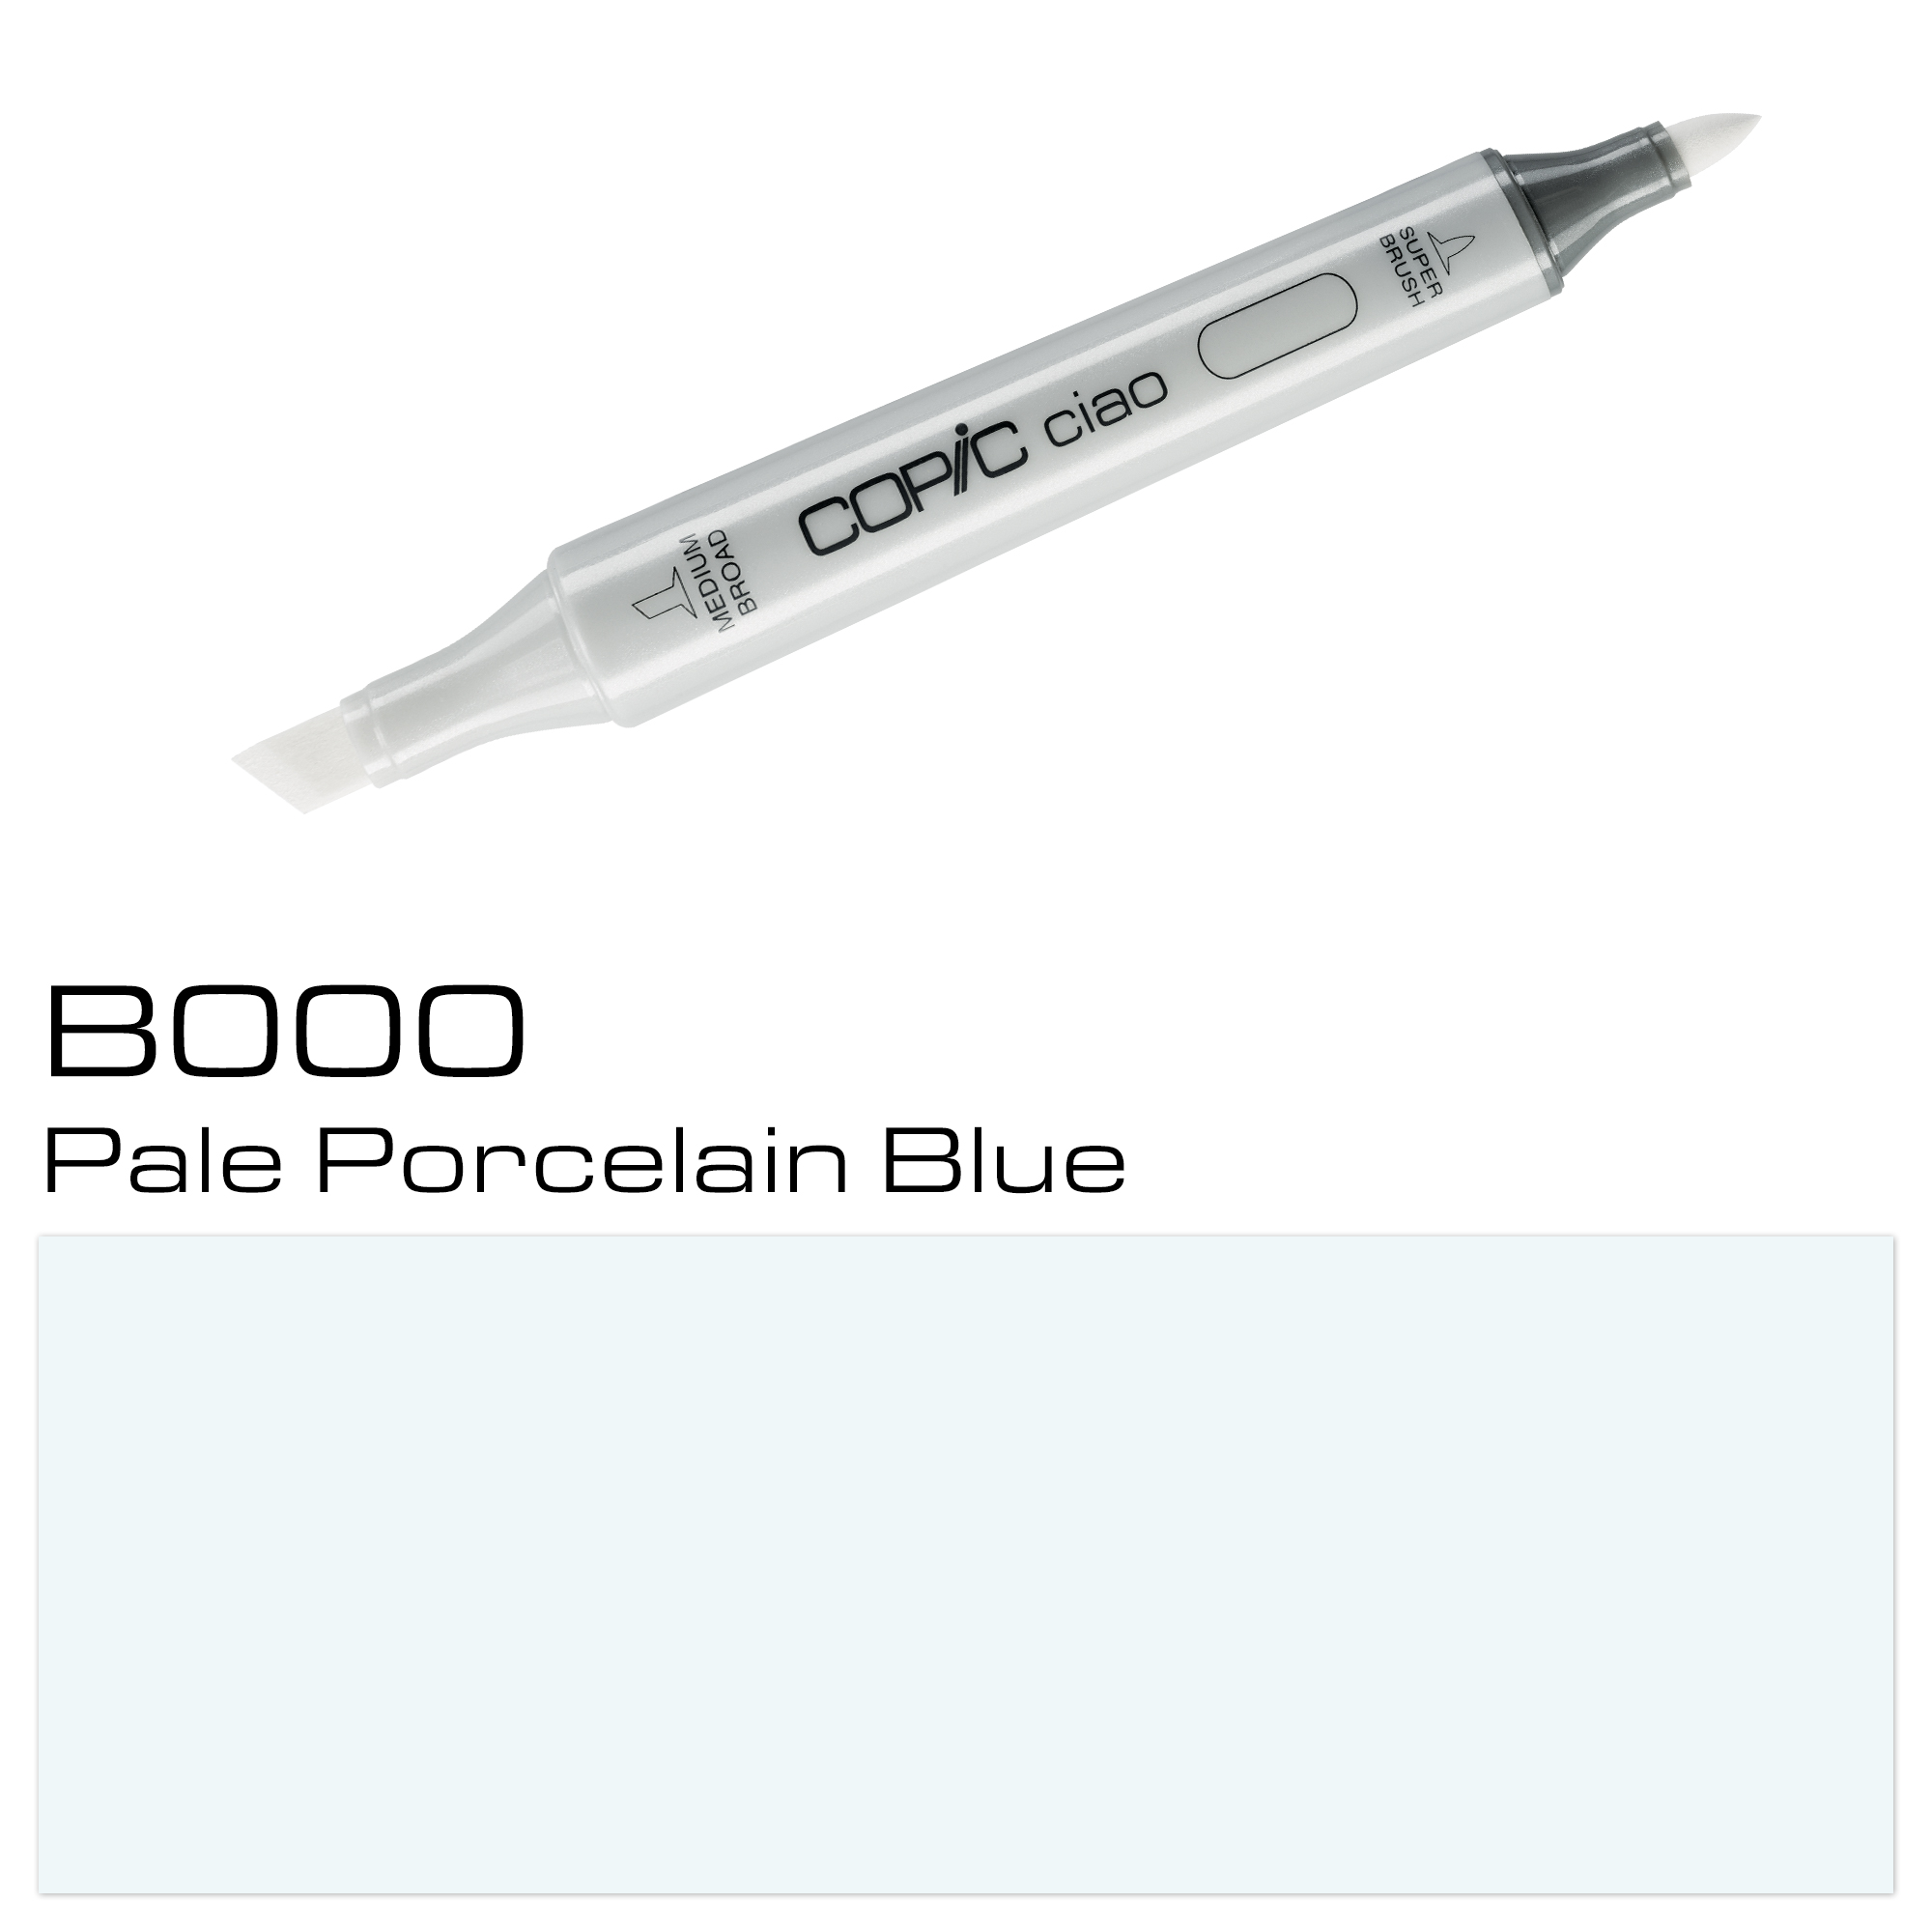 COPIC CIAO PALE PORCELAIN BLUE B000